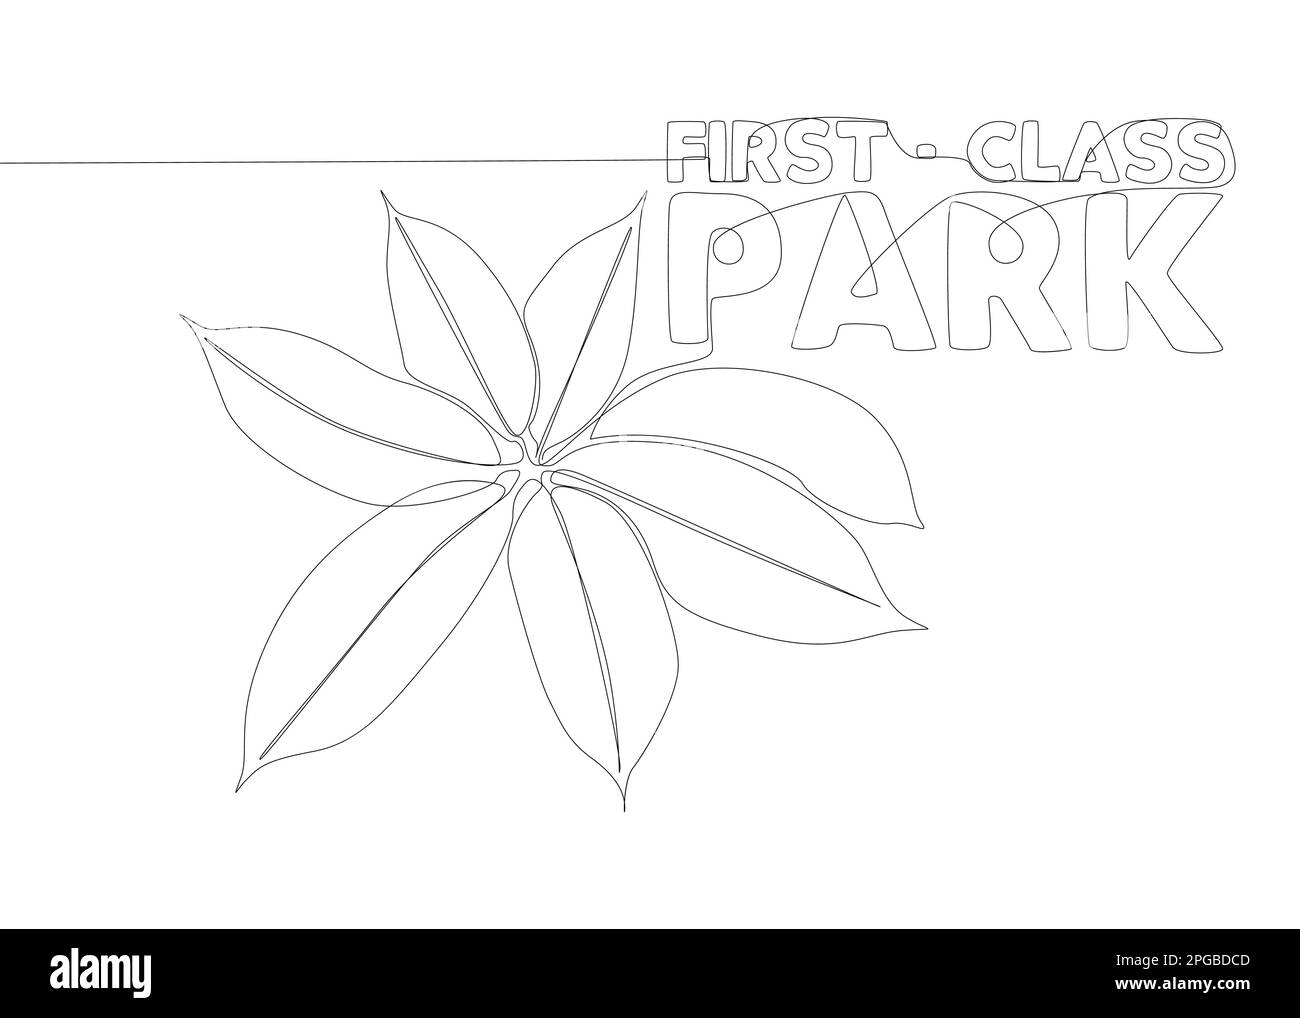 Eine durchgehende Zeile des First-Class-Park-Wortes mit Pflanzenblatt. Vektorkonzept zur Darstellung dünner Linien. Kontur Zeichnen kreativer Ideen. Stock Vektor